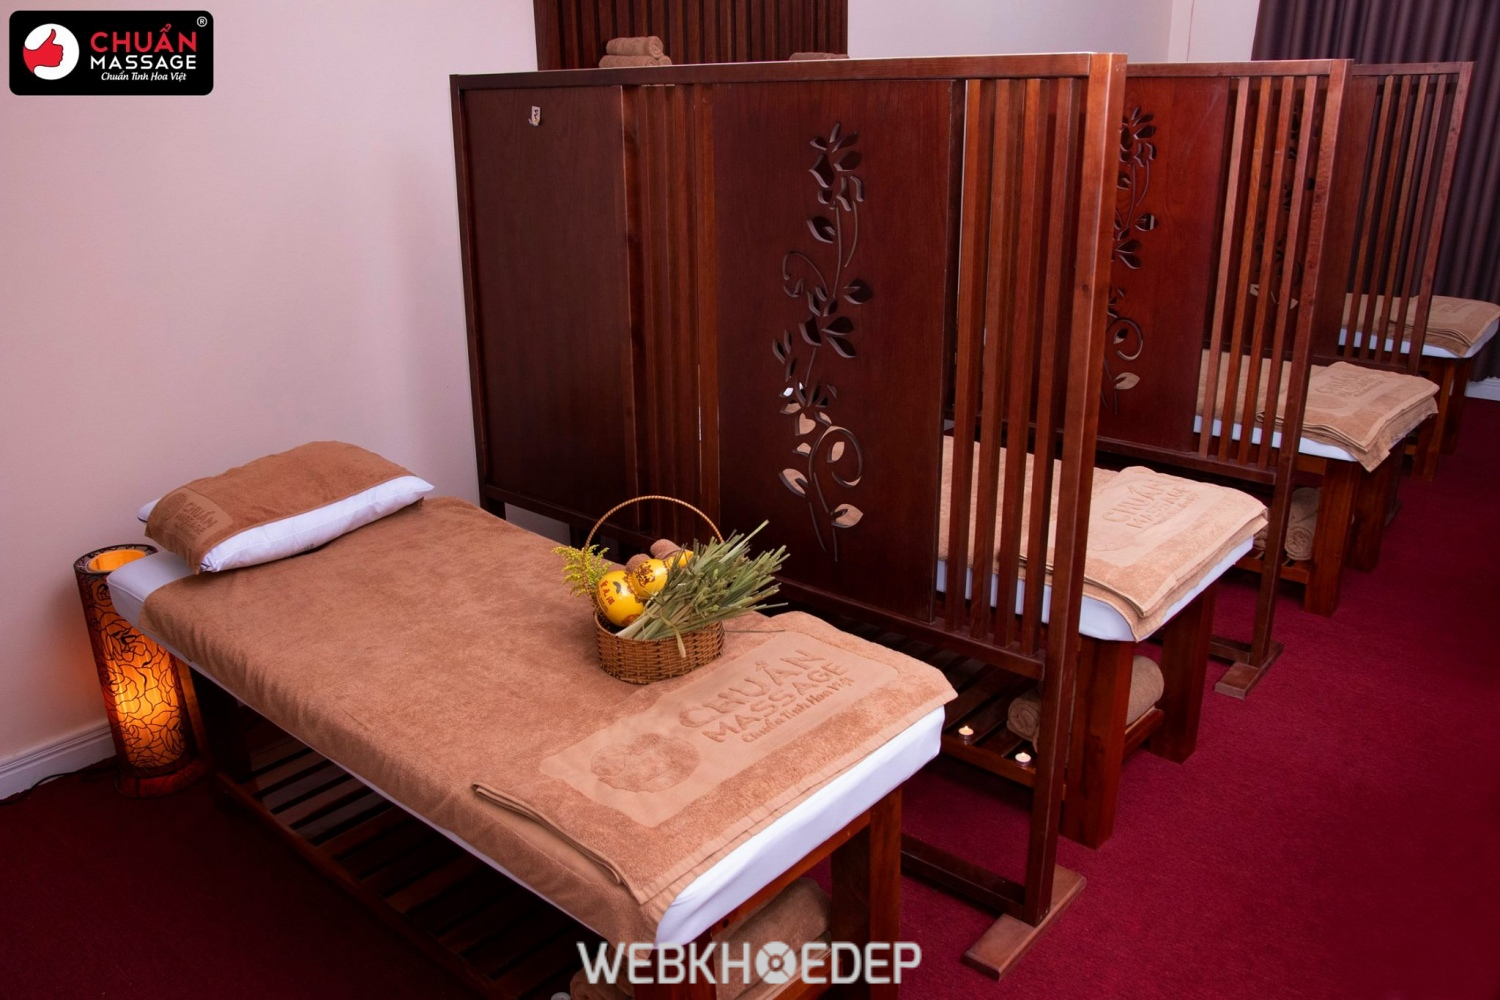 Dịch vụ massage đá nóng cao cấp cho bạn thư giãn thoải mái tối đa